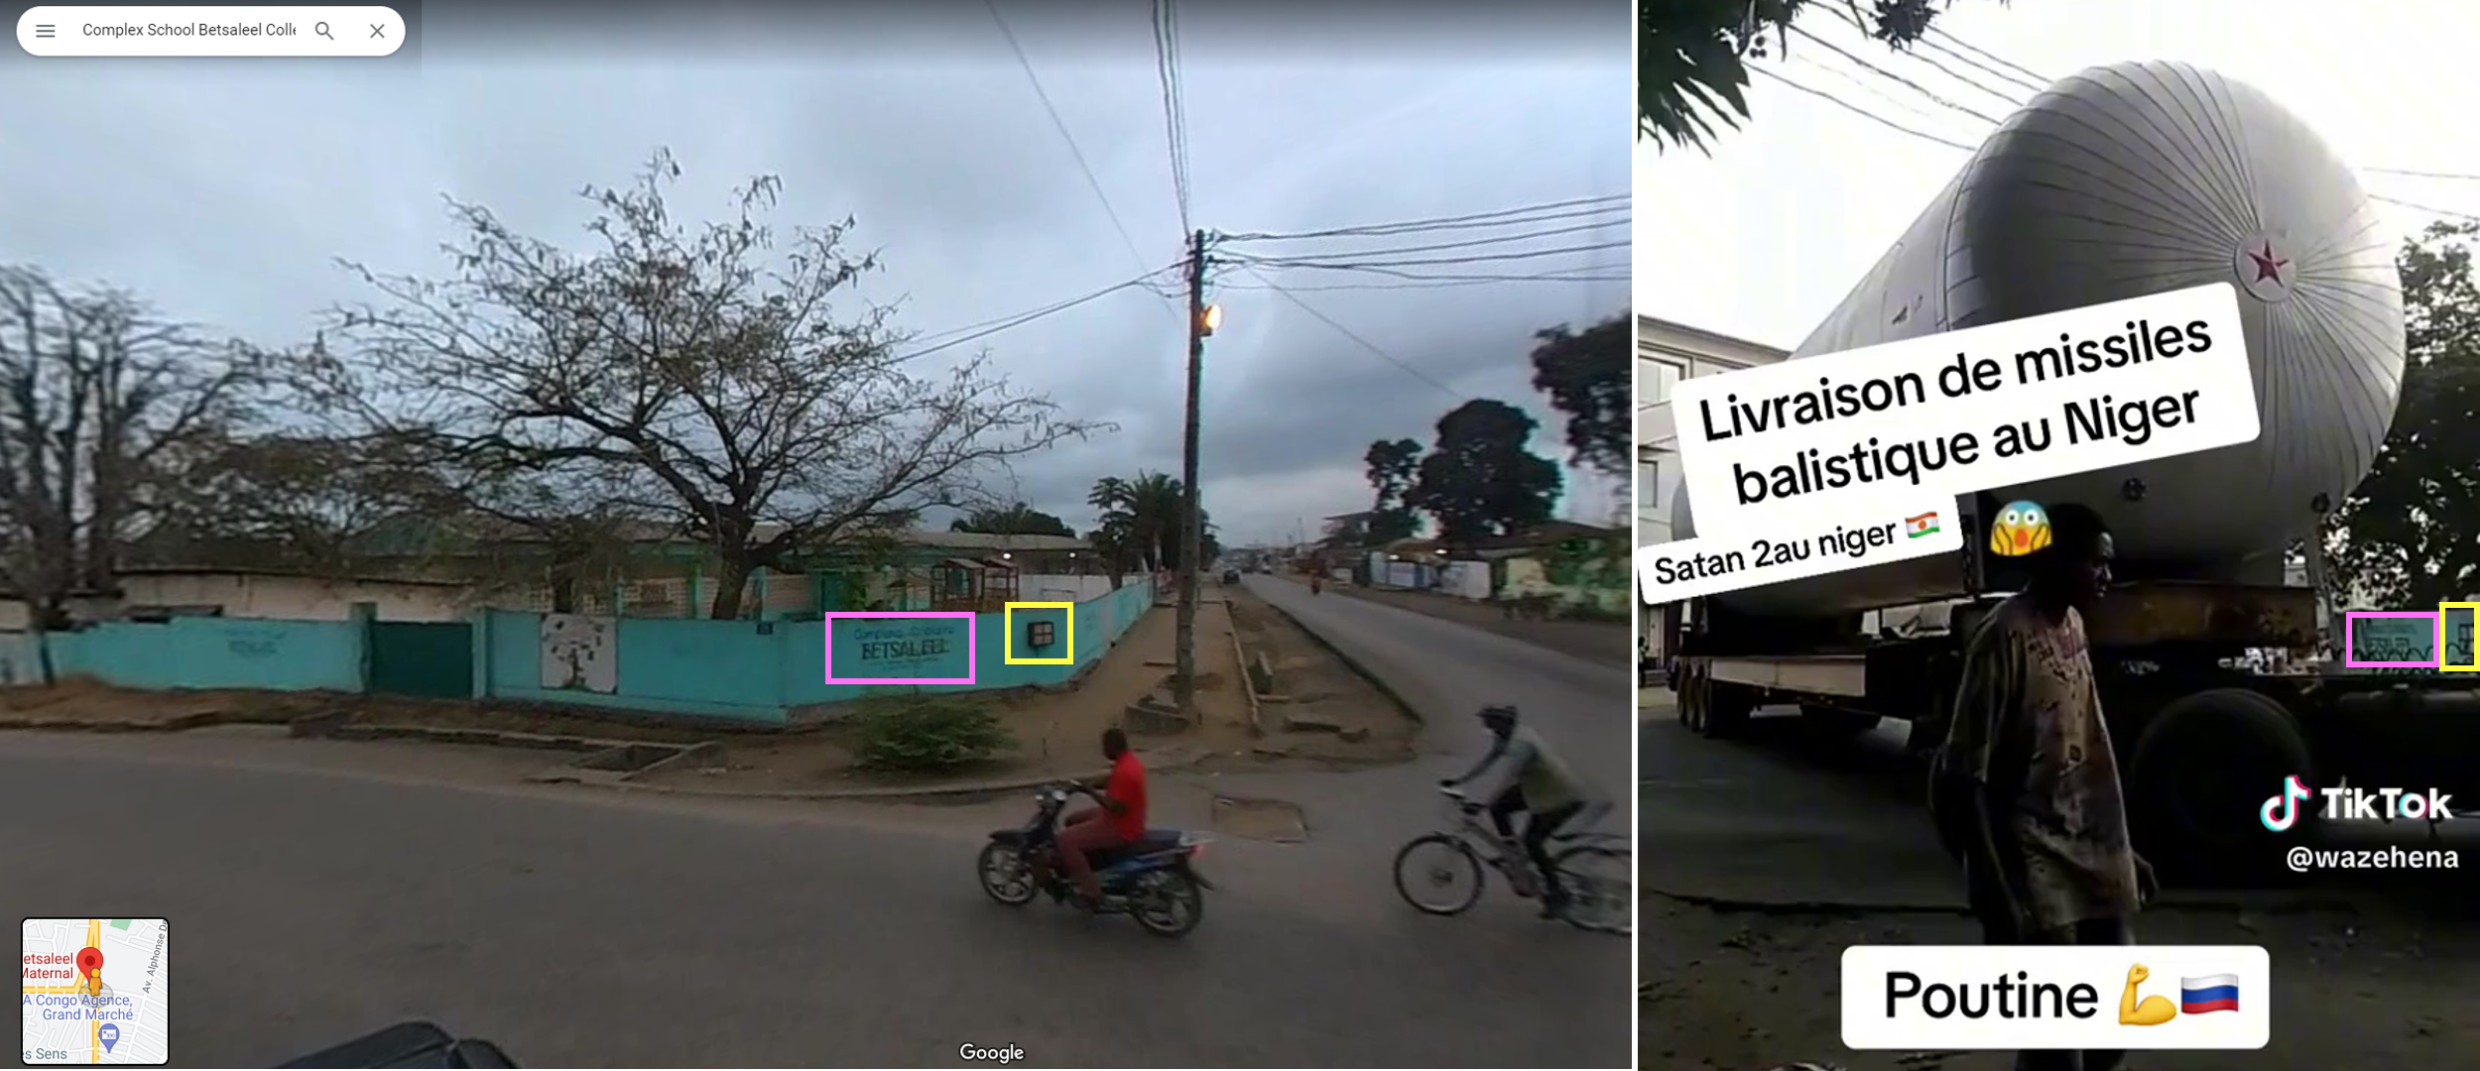 Auf diesen Bildern, die auf Google Street View verfügbar sind, erkennen Sie das Wort "Betsaleel" aus dem Video, sowie die blaugrüne Wand.  Das quadratische schwarze Licht (hier gelb umrandet) erscheint auch in beiden Bildern und hilft uns zu erkennen, dass sie am selben Ort gefilmt wurden.